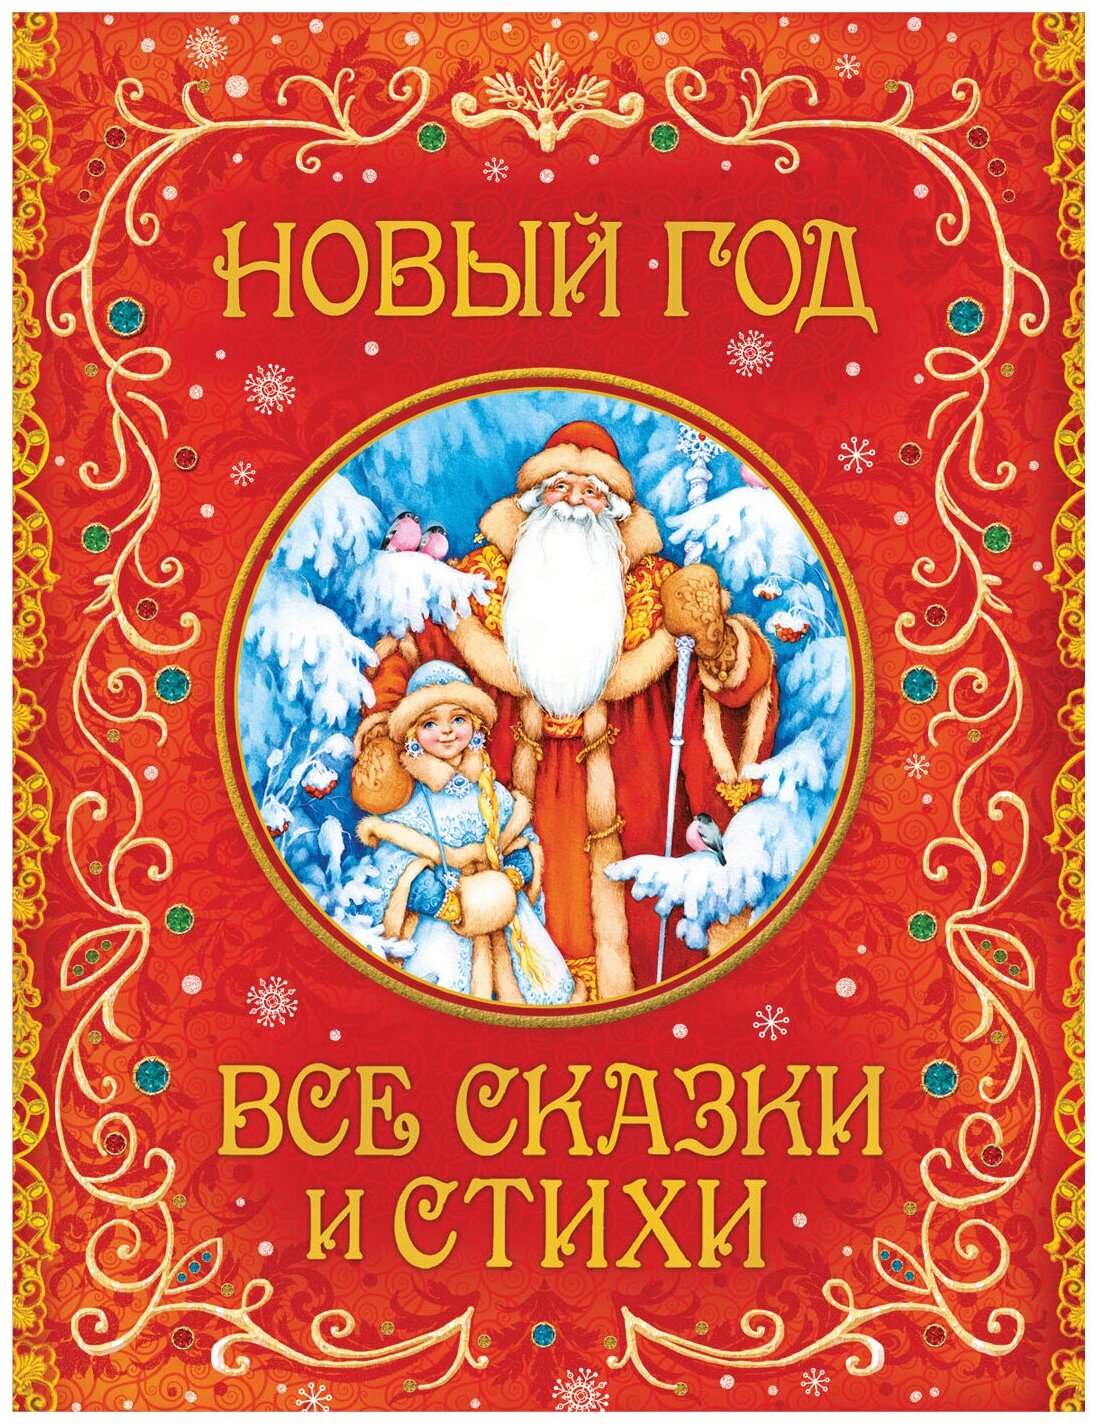 Русские народные сказки читаем бесплатно онлайн | сказки. рассказы. стихи